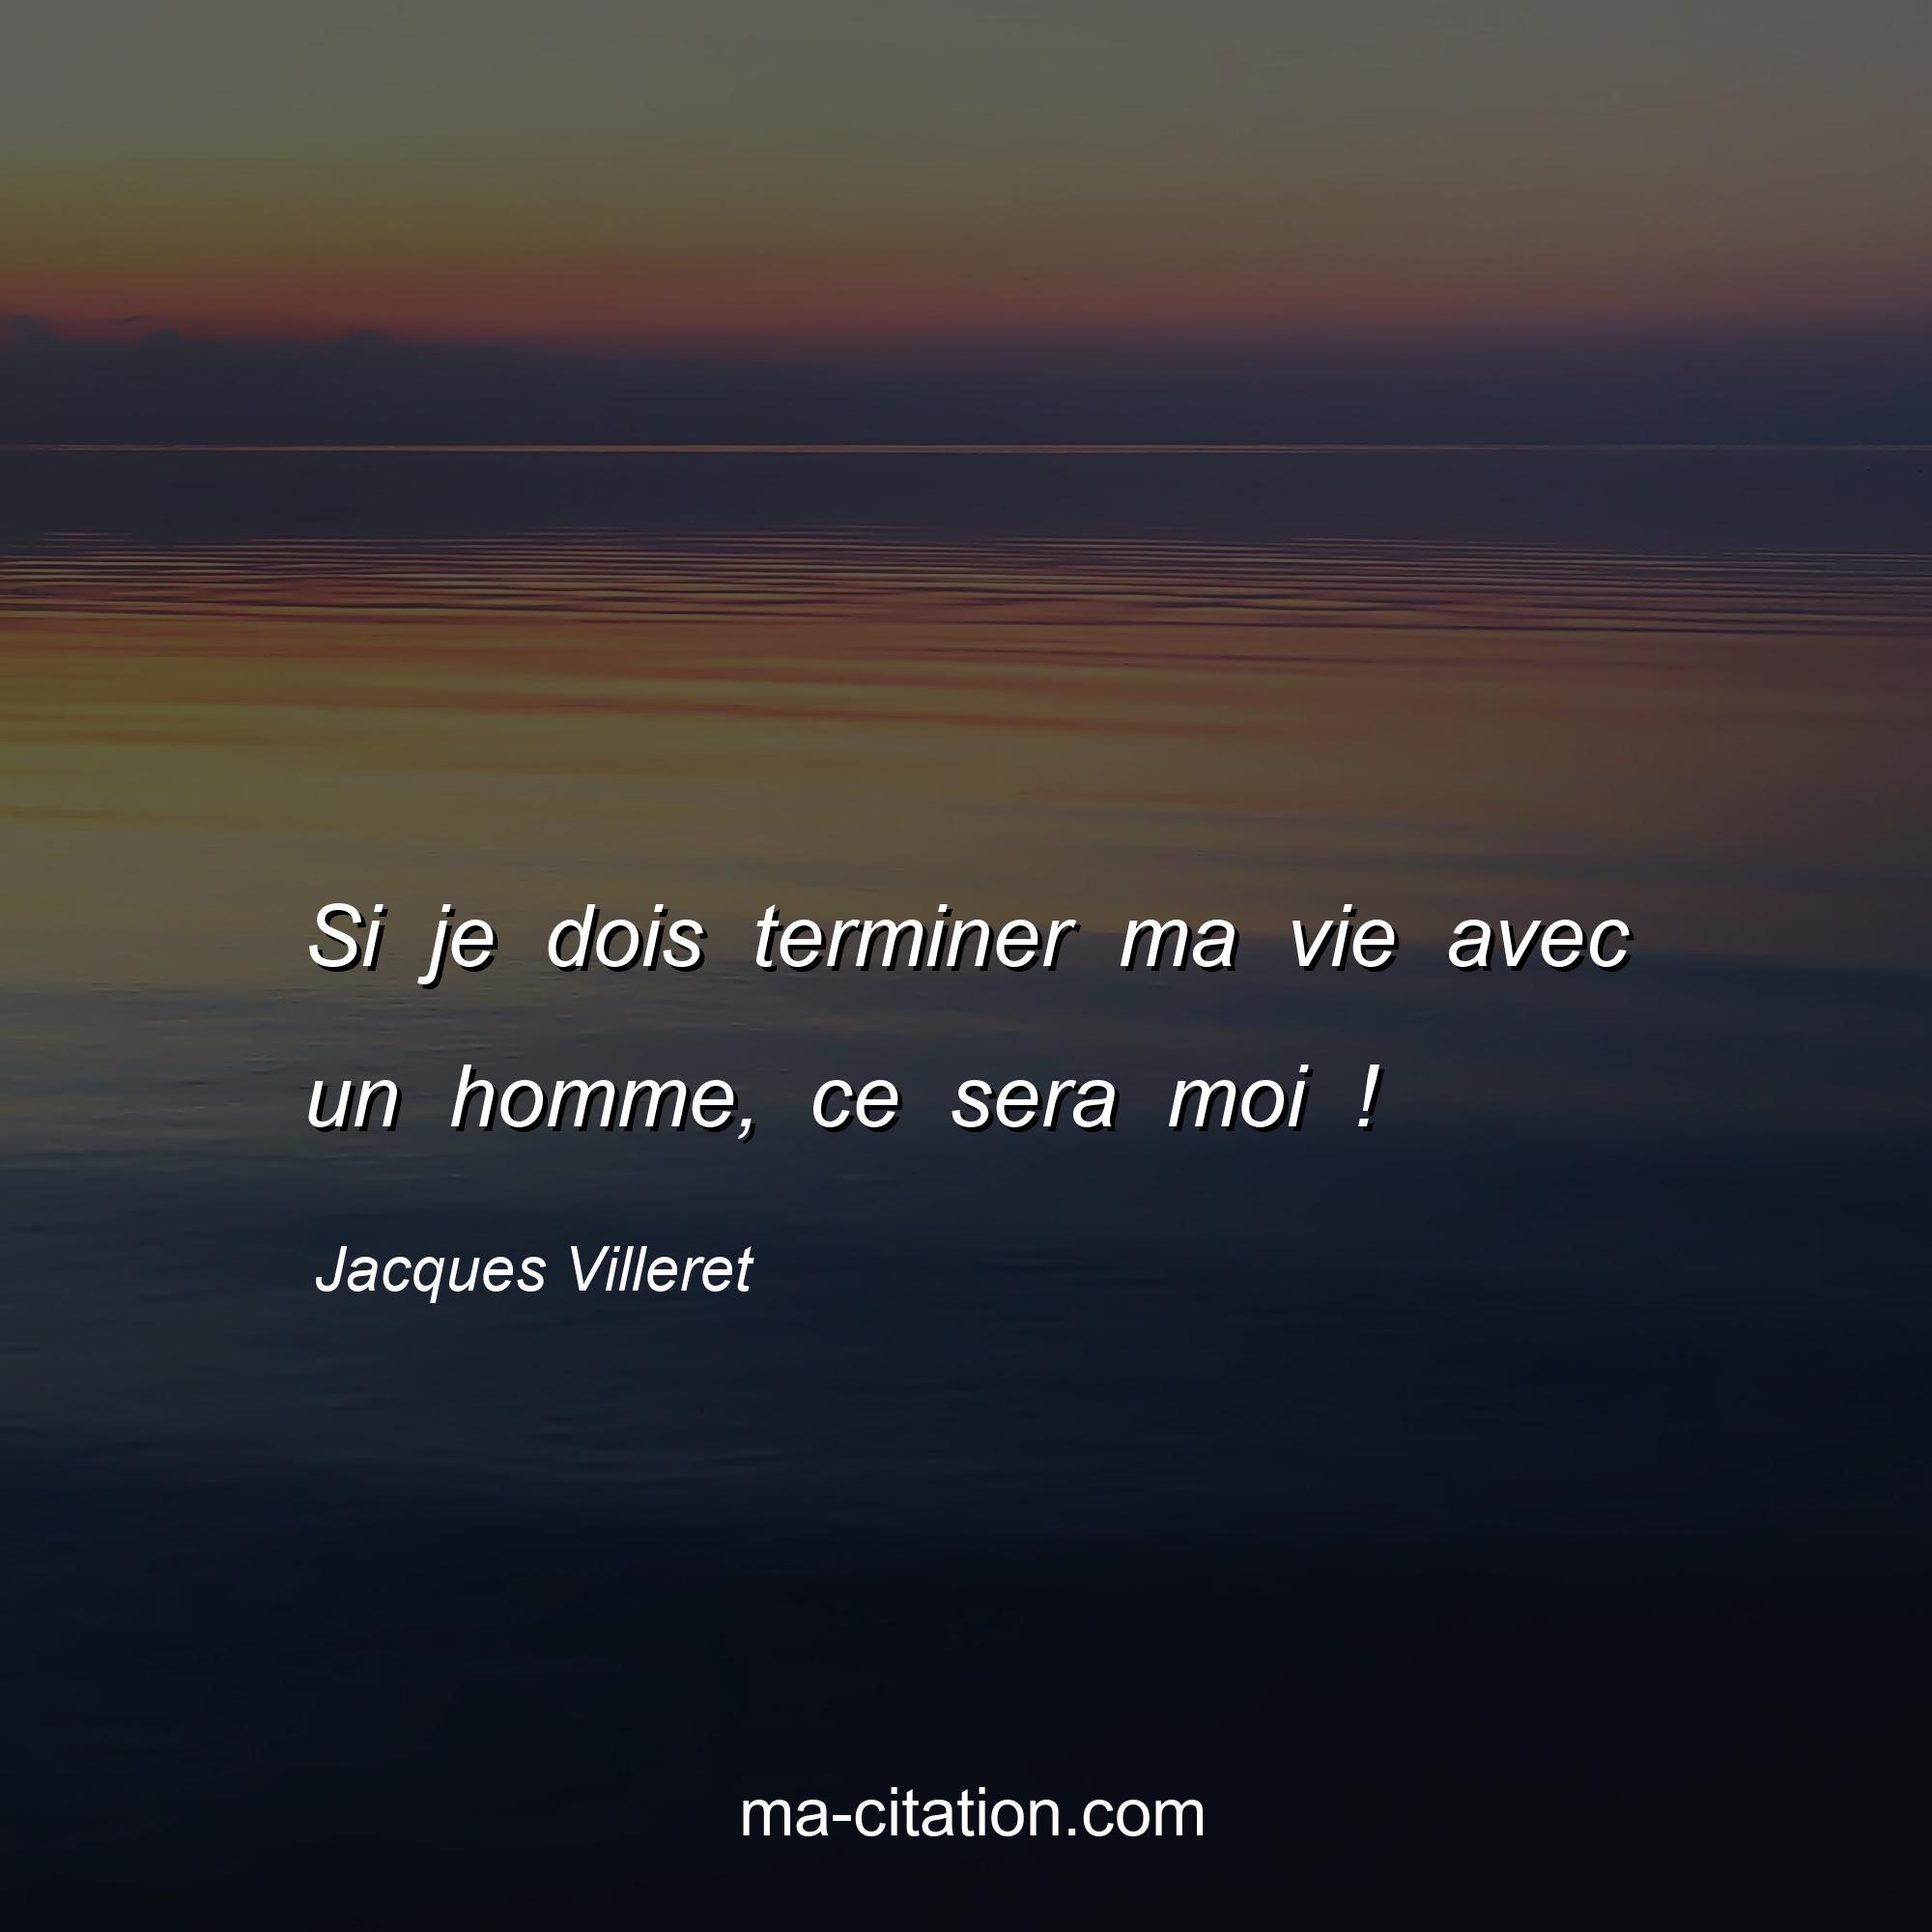 Jacques Villeret : Si je dois terminer ma vie avec un homme, ce sera moi !